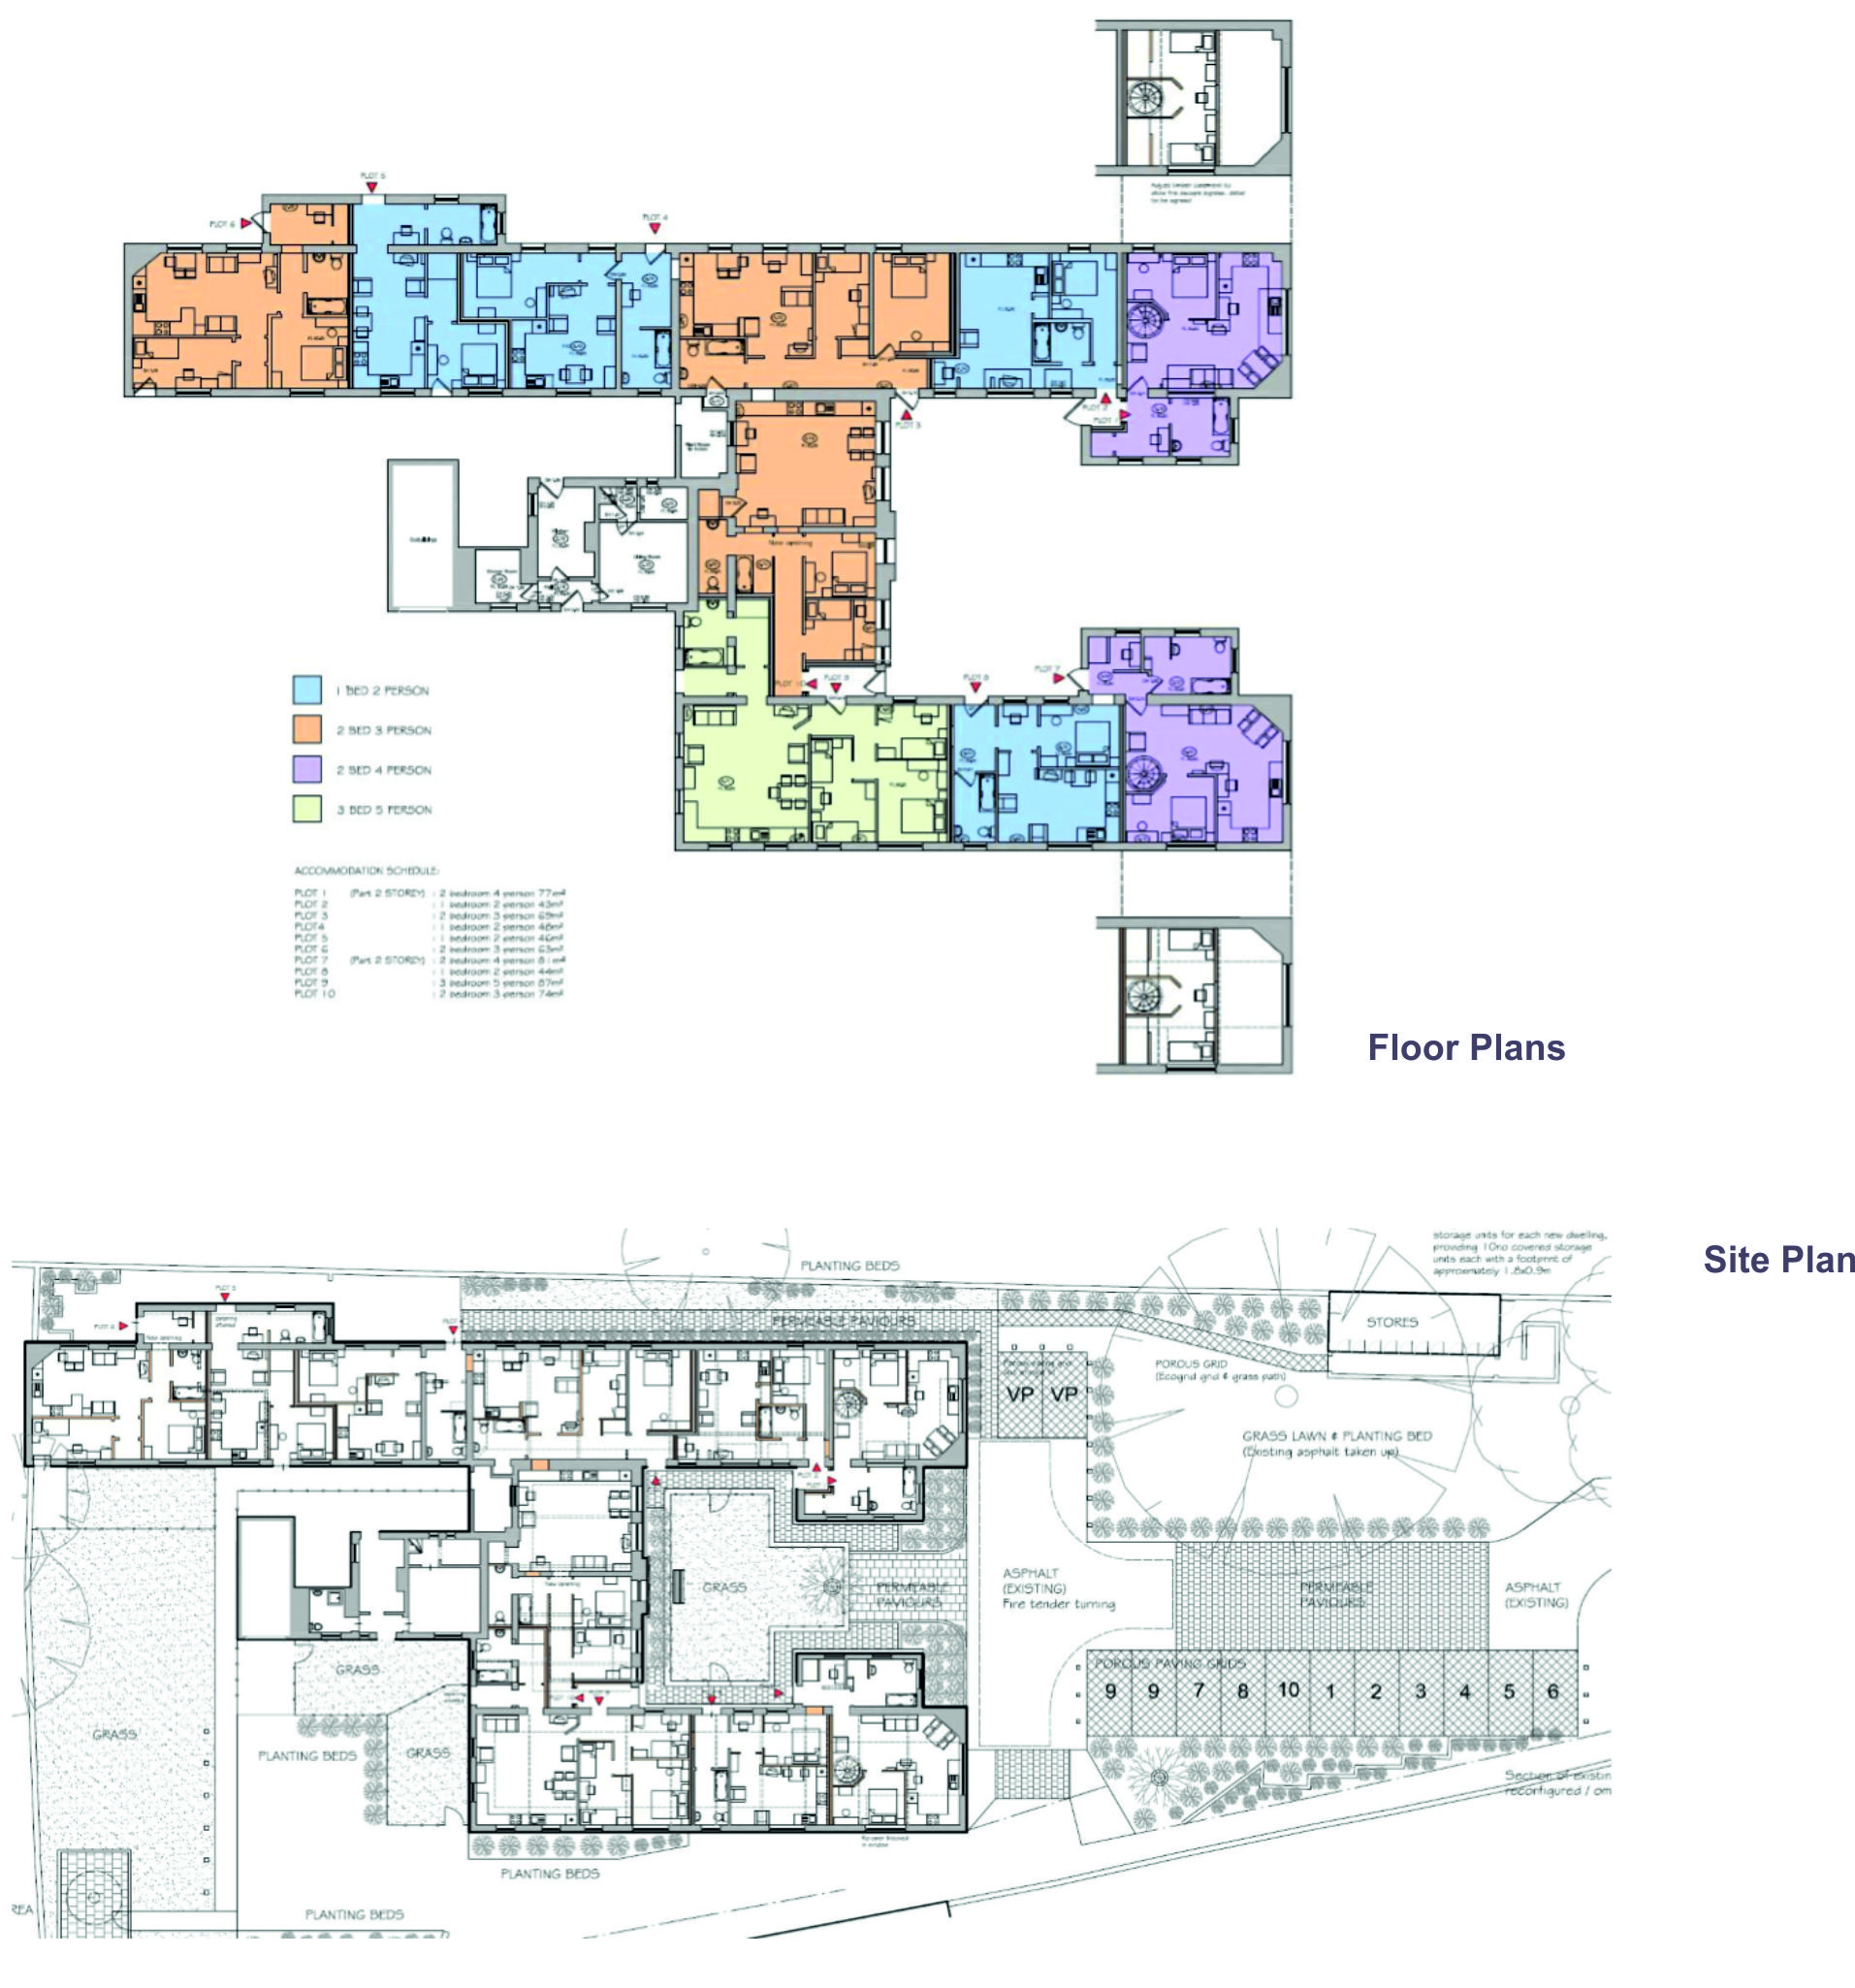 Floor Plan & Site Plan